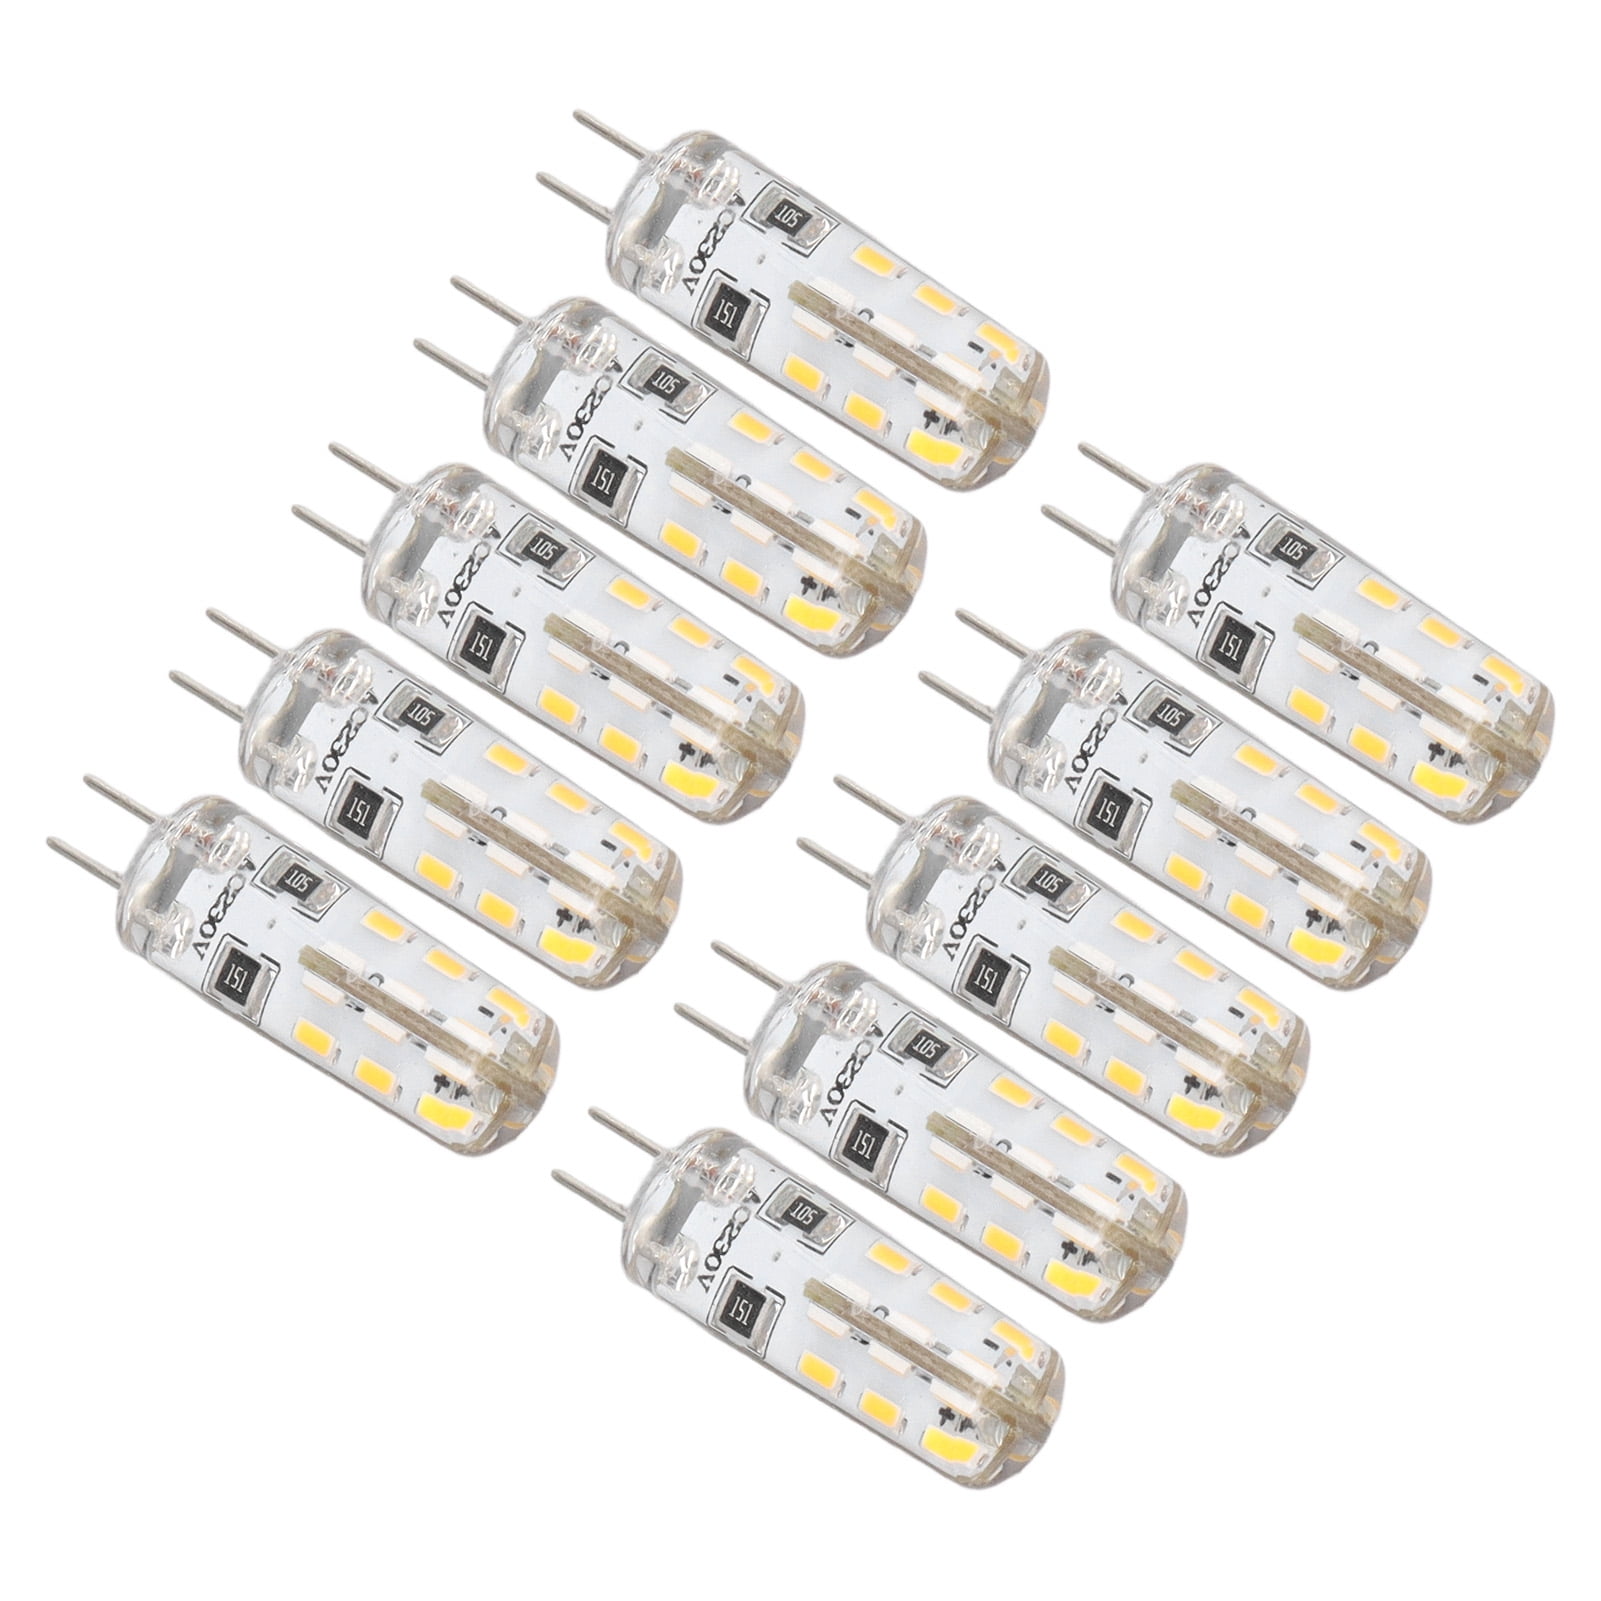 LED Landscape Light Bulbs, 10 Pcs G4 LED Bulbs 1.5W AC220V Bi Pin Base For Walmart.com